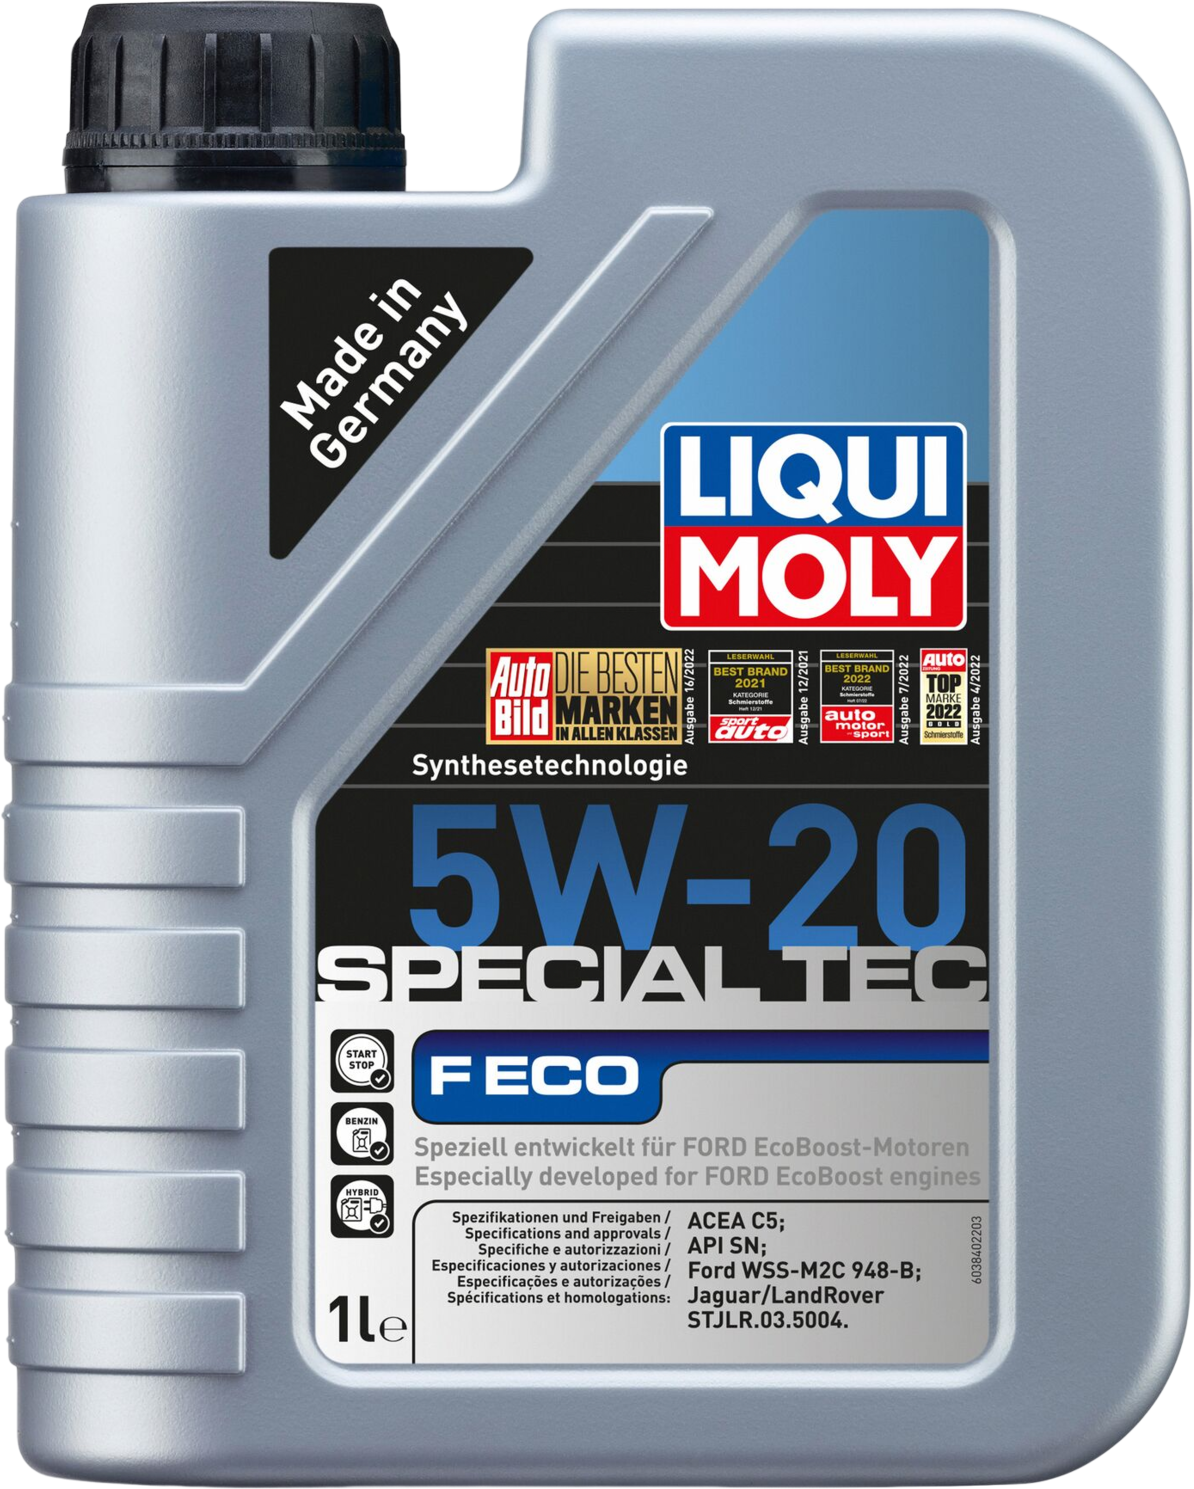 Liqui Moly Special Tec F ECO 5W-20, 1 lt